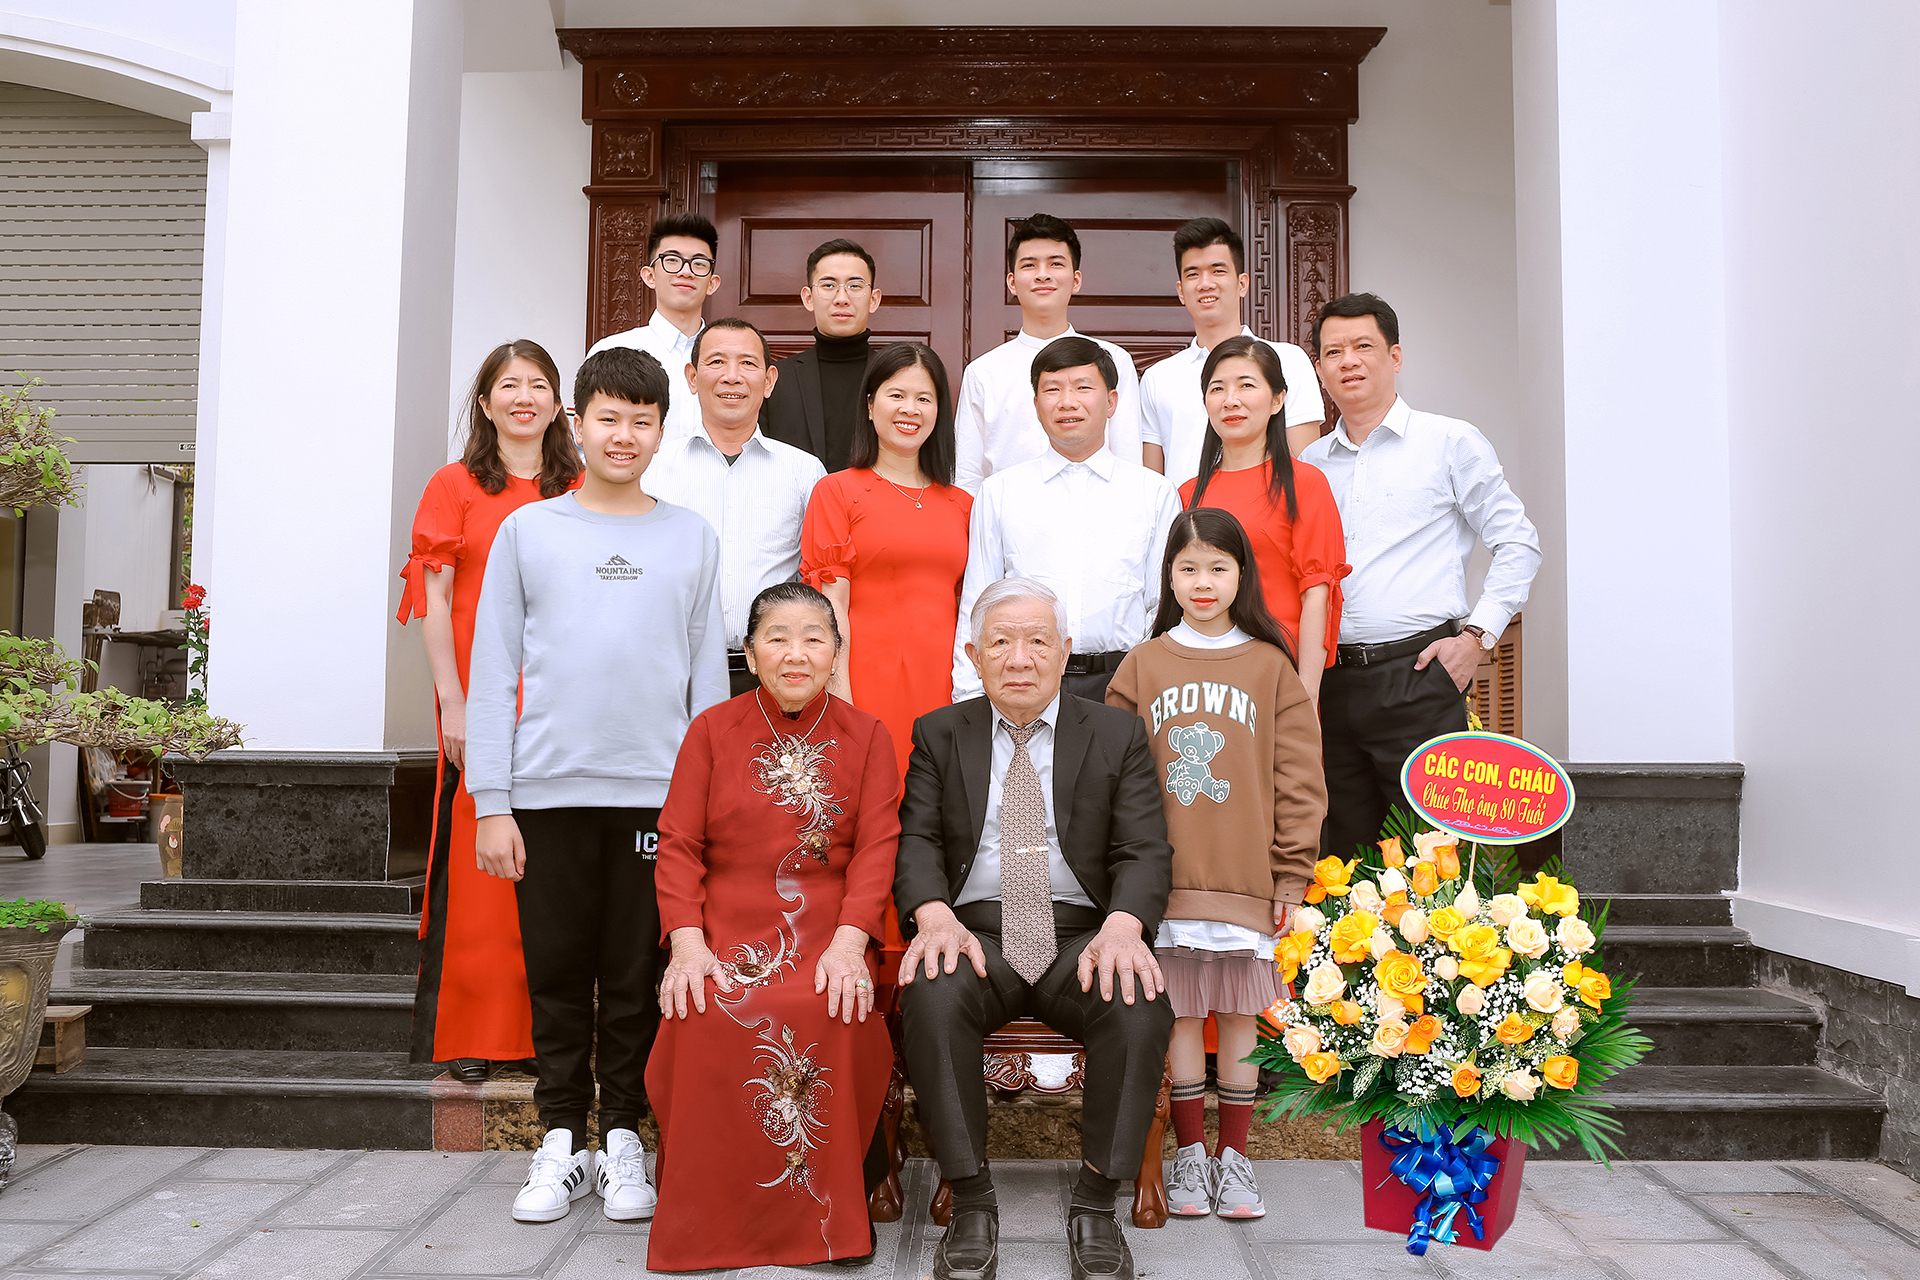 Chụp ảnh gia đình đẹp lưu lại khoảnh khắc đẹp tại Ninh Bình